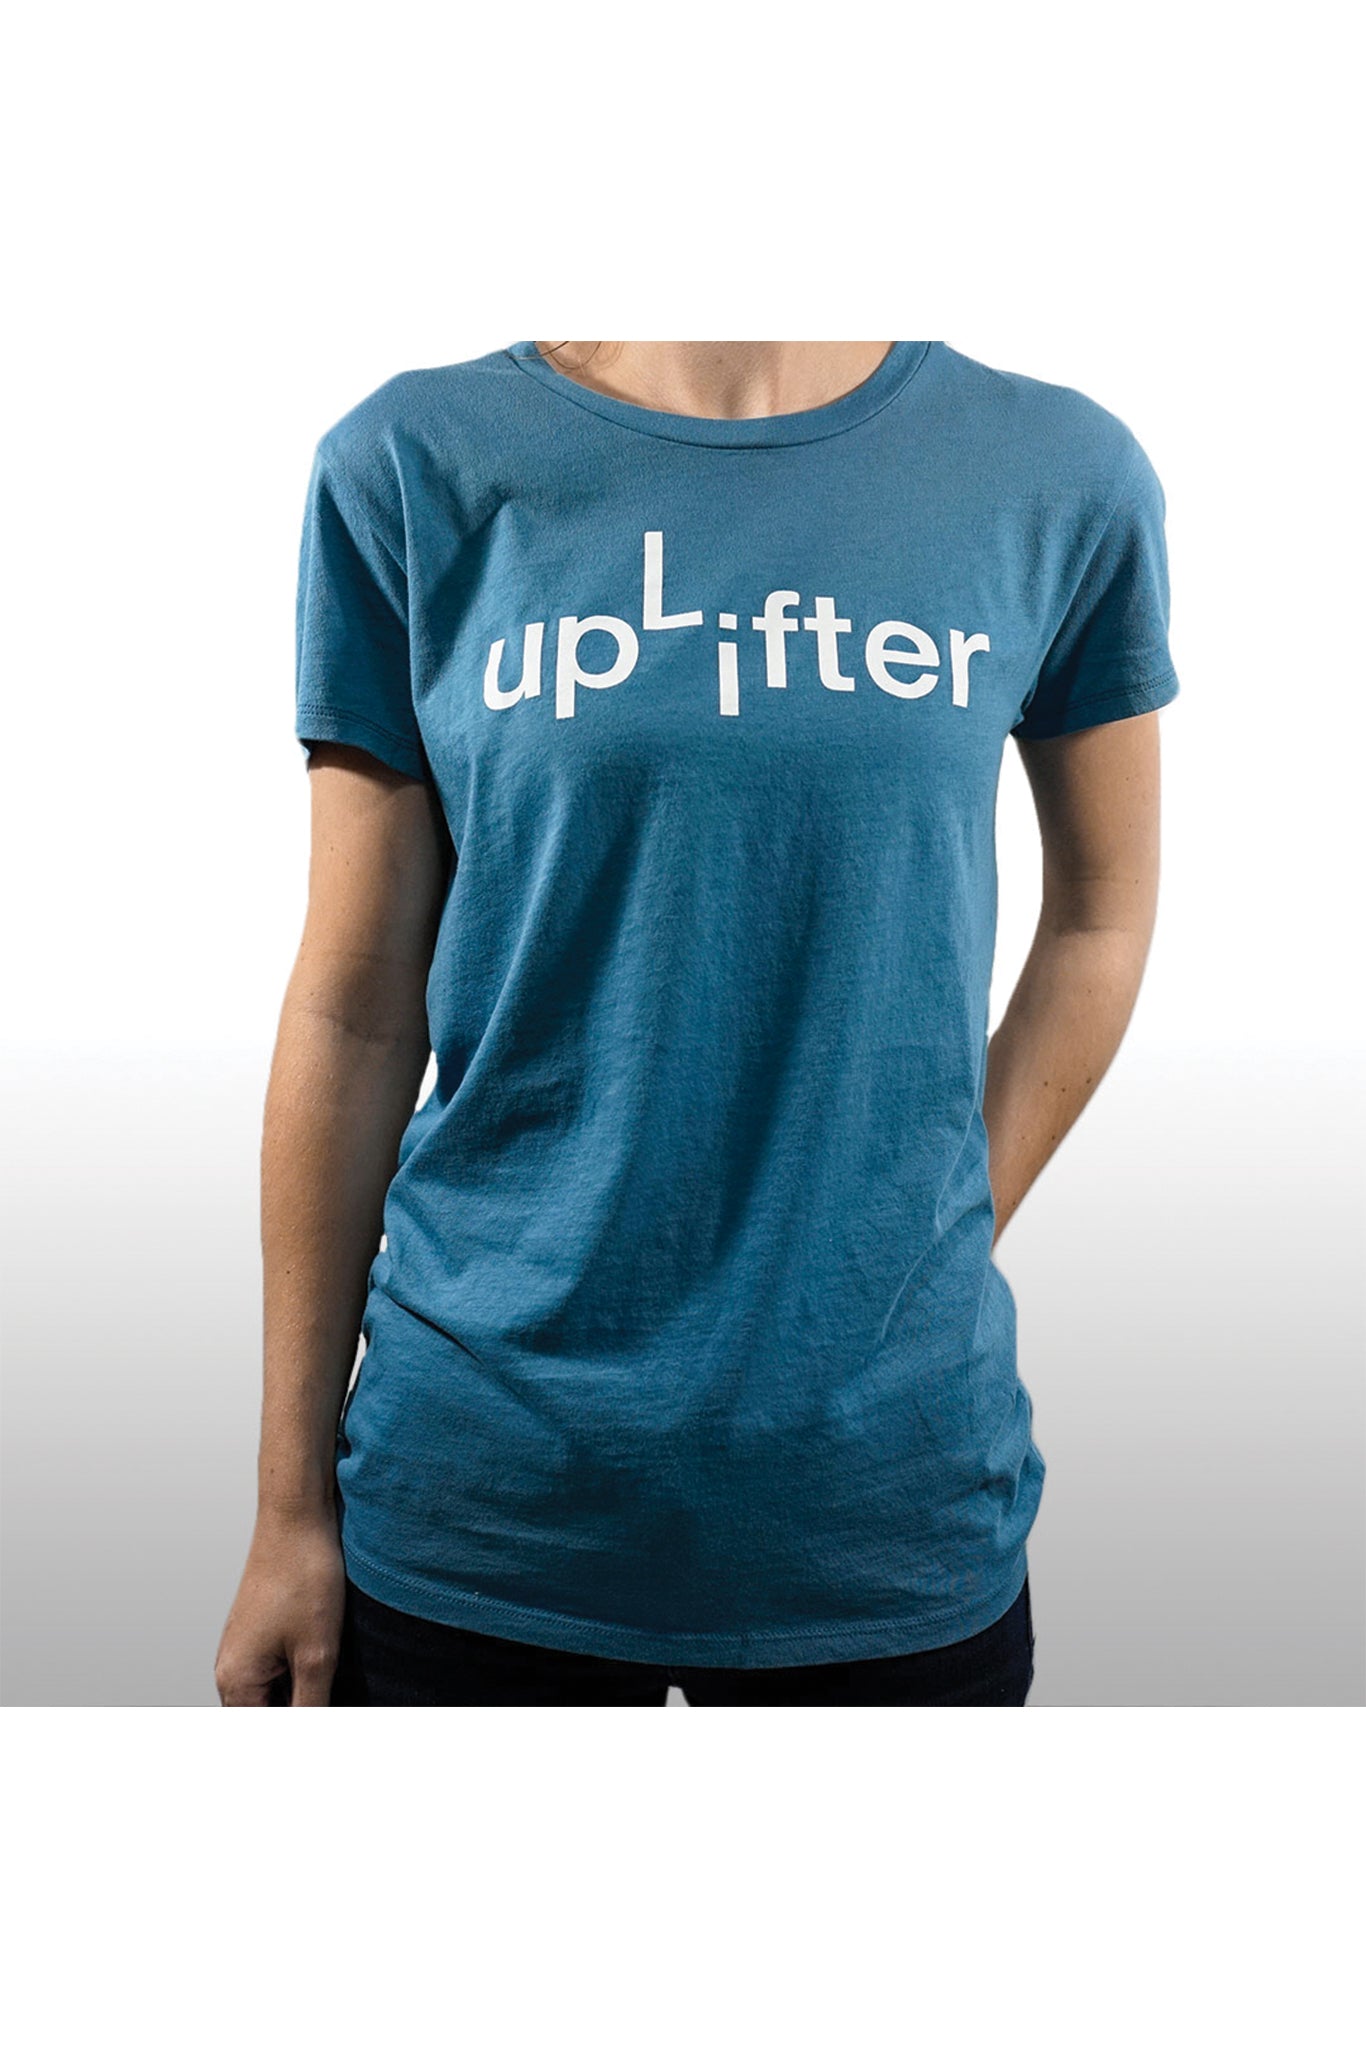 UpLifter Tee - Women's